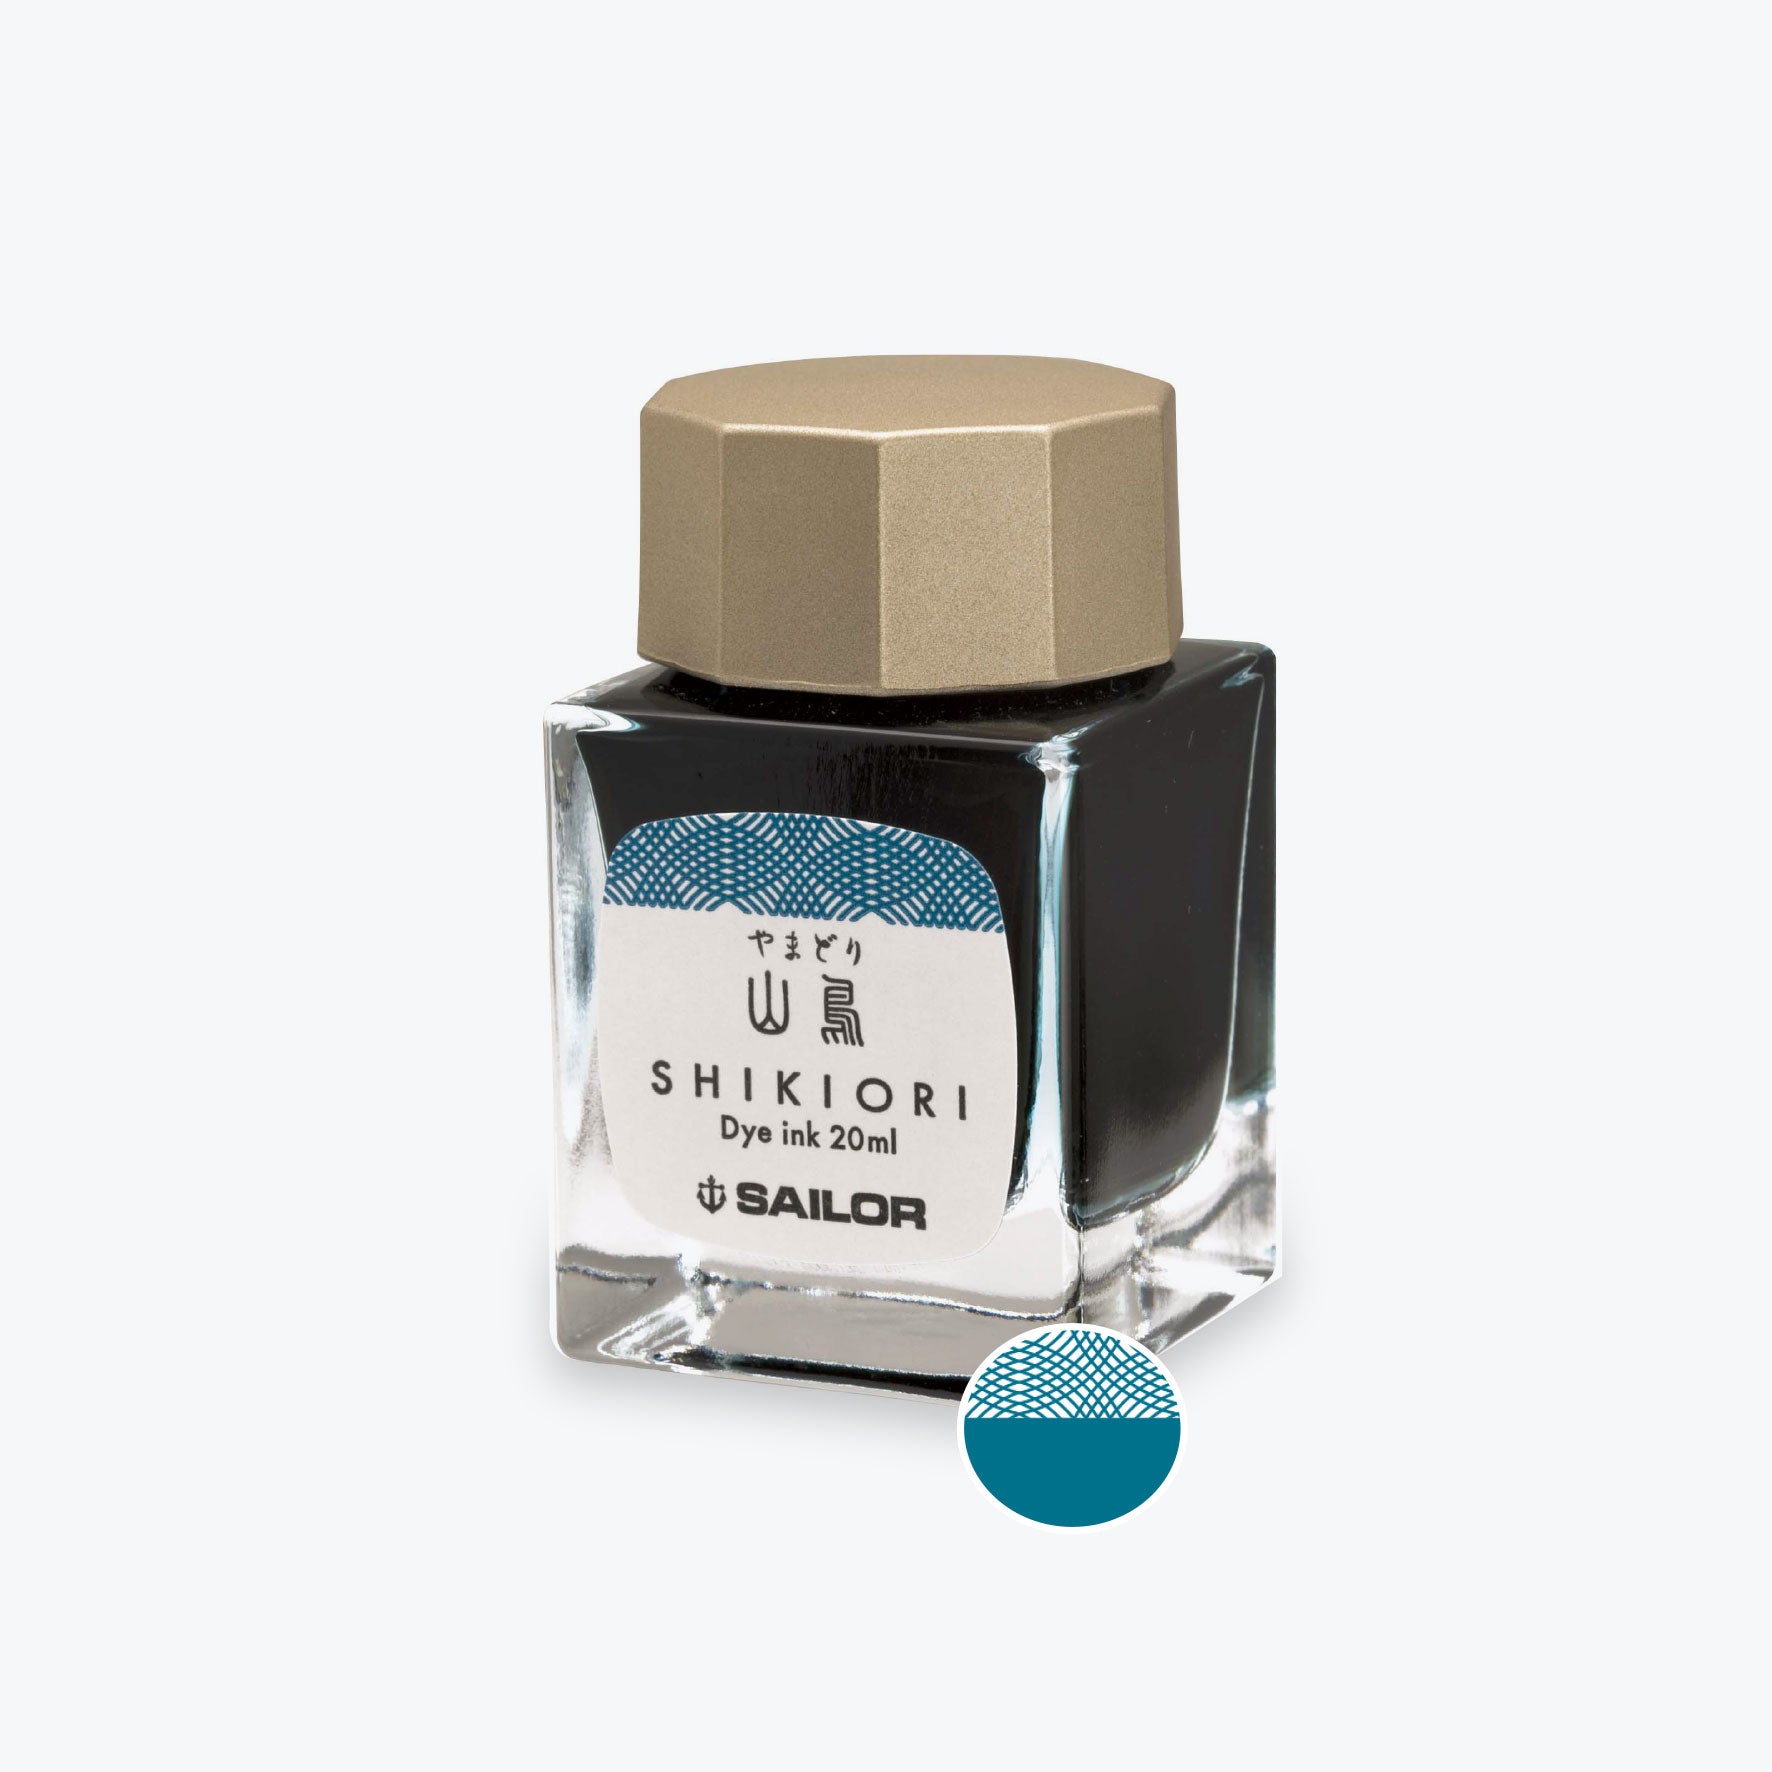 Sailor - Shikiori Ink 20ml - Yama Dori